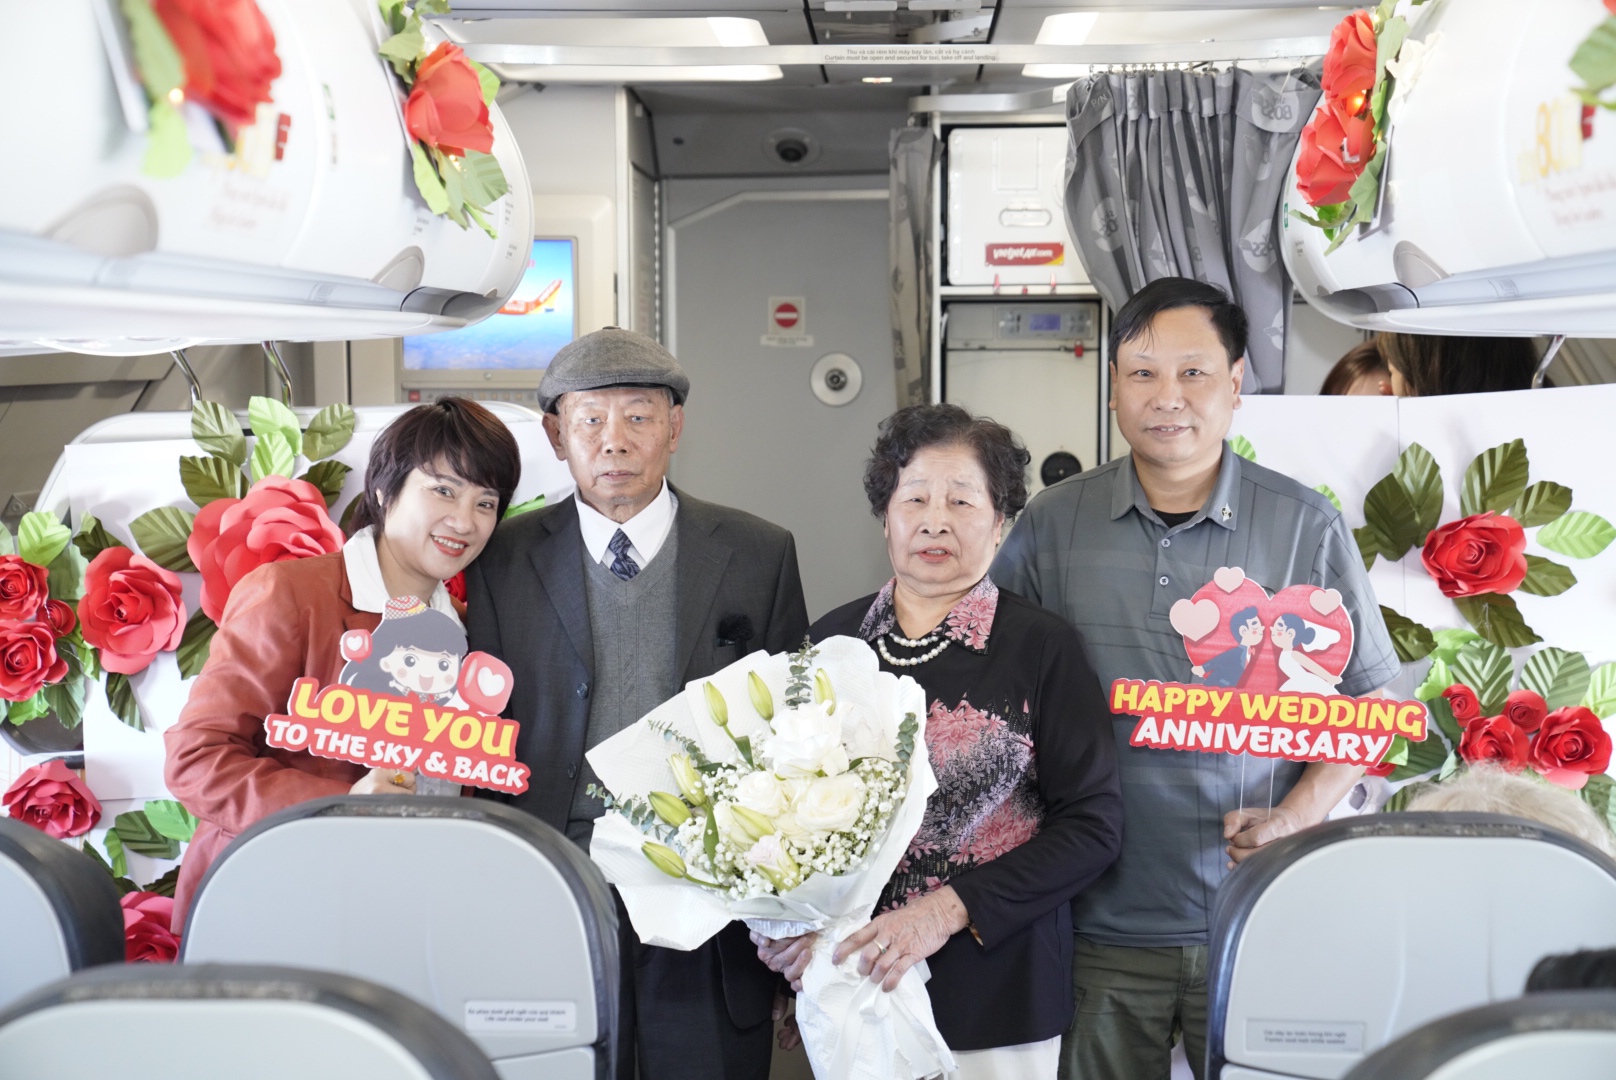 Cụ ông U90 tỏ tình với vợ ngọt ngào trên chuyến bay Vietjet ngày Valentine- Ảnh 5.